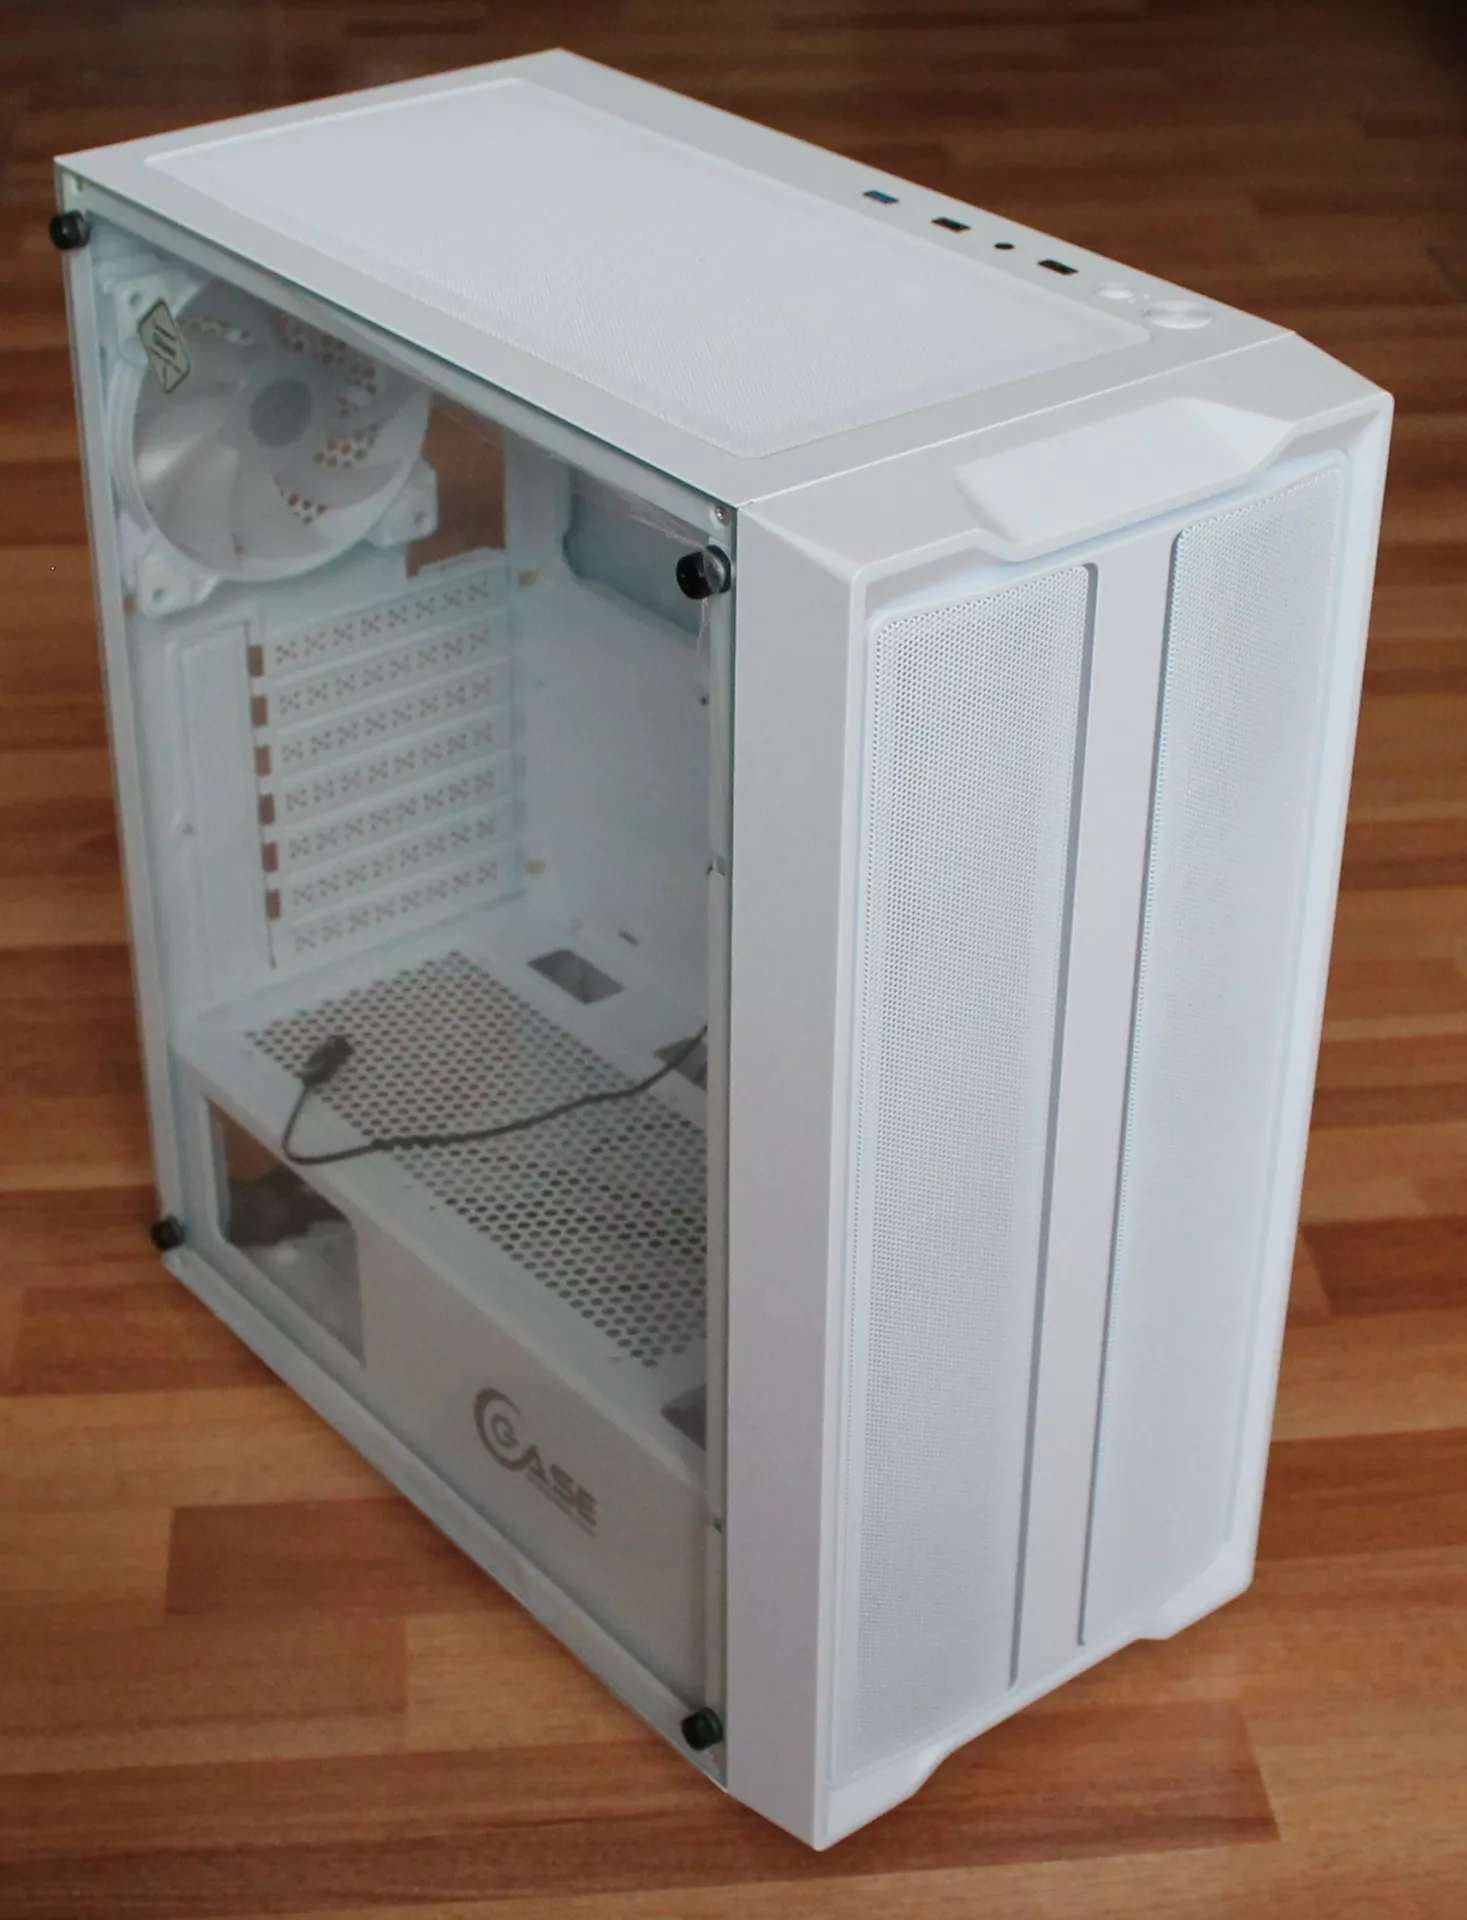 Обзор компьютерного корпуса Powercase Mistral Evo White